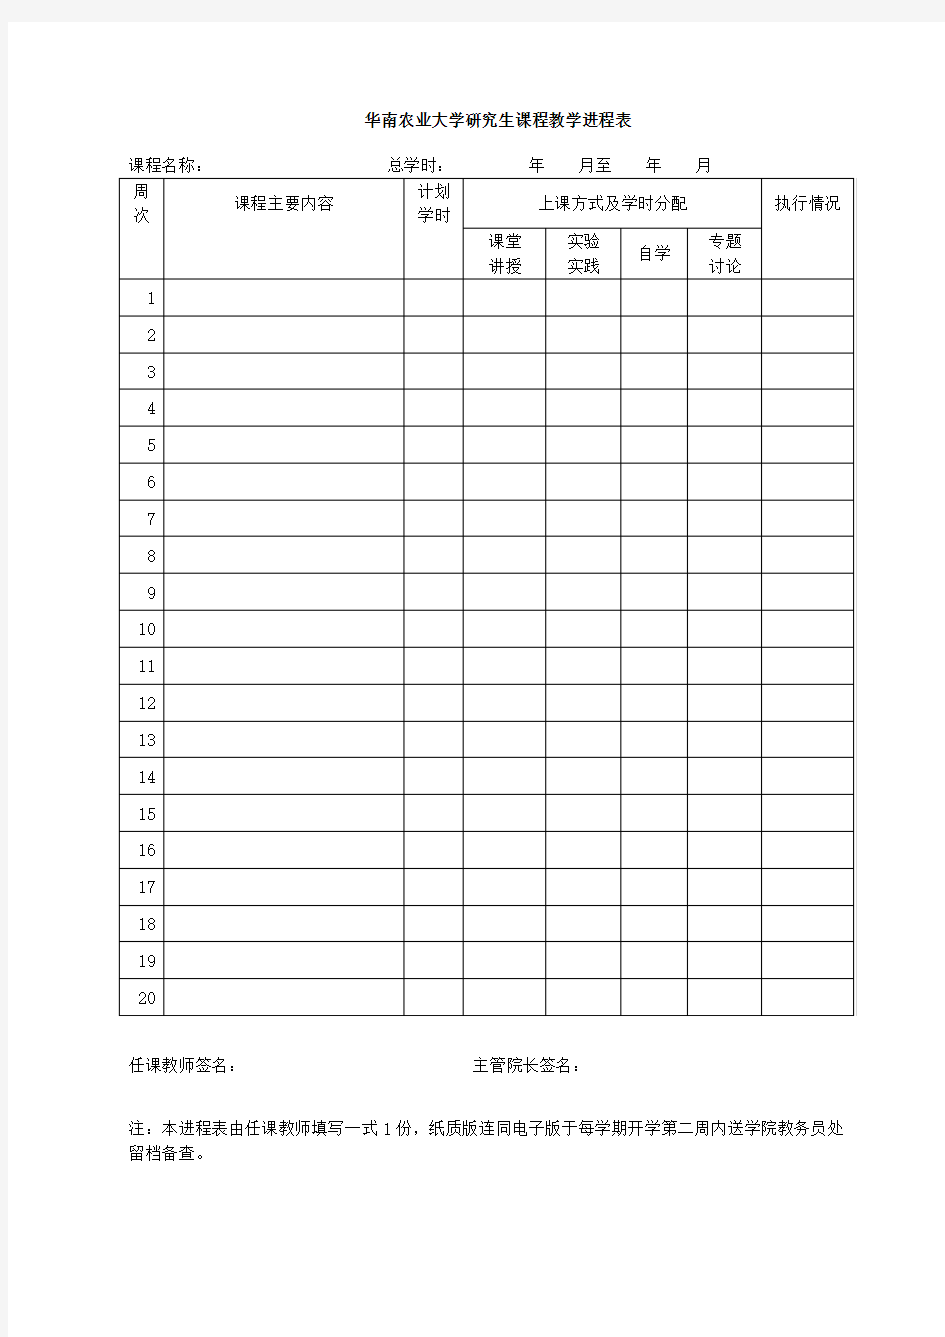 华南农业大学研究生课程教学进程表